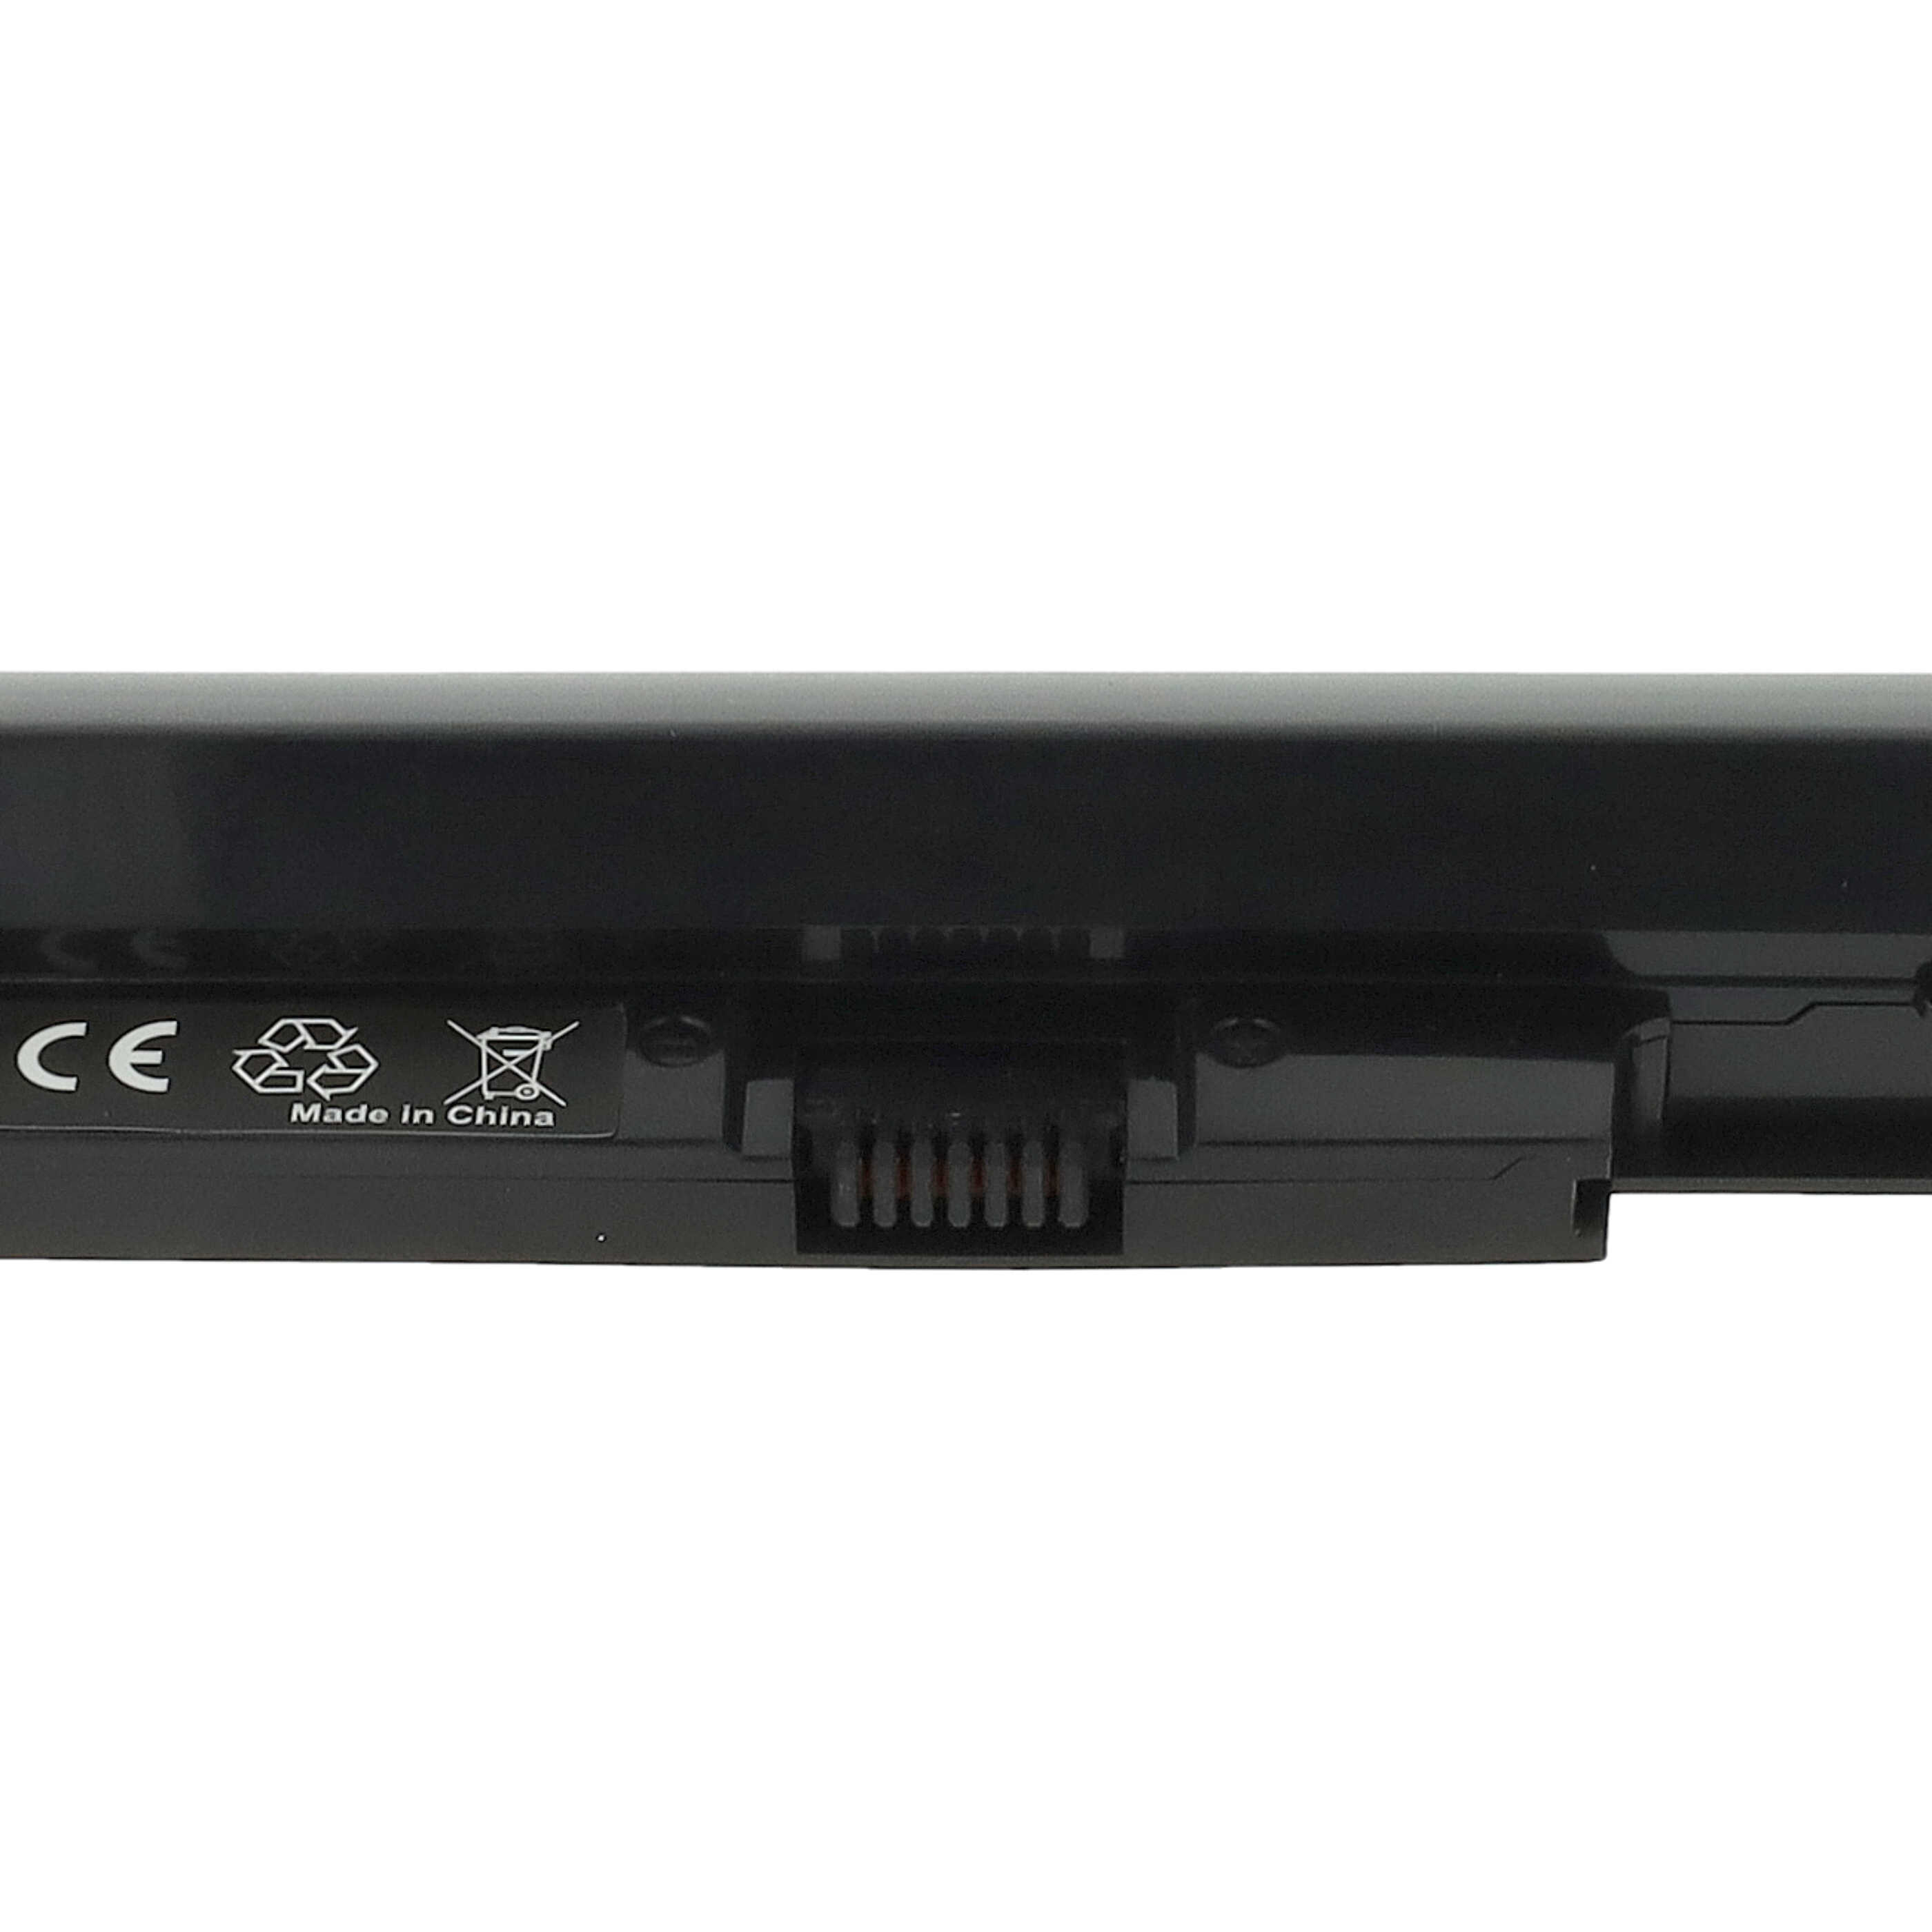 Batterie remplace HP H6L28AA, 768549-001, 707618-121 pour ordinateur portable - 2600mAh 14,8V Li-ion, gris